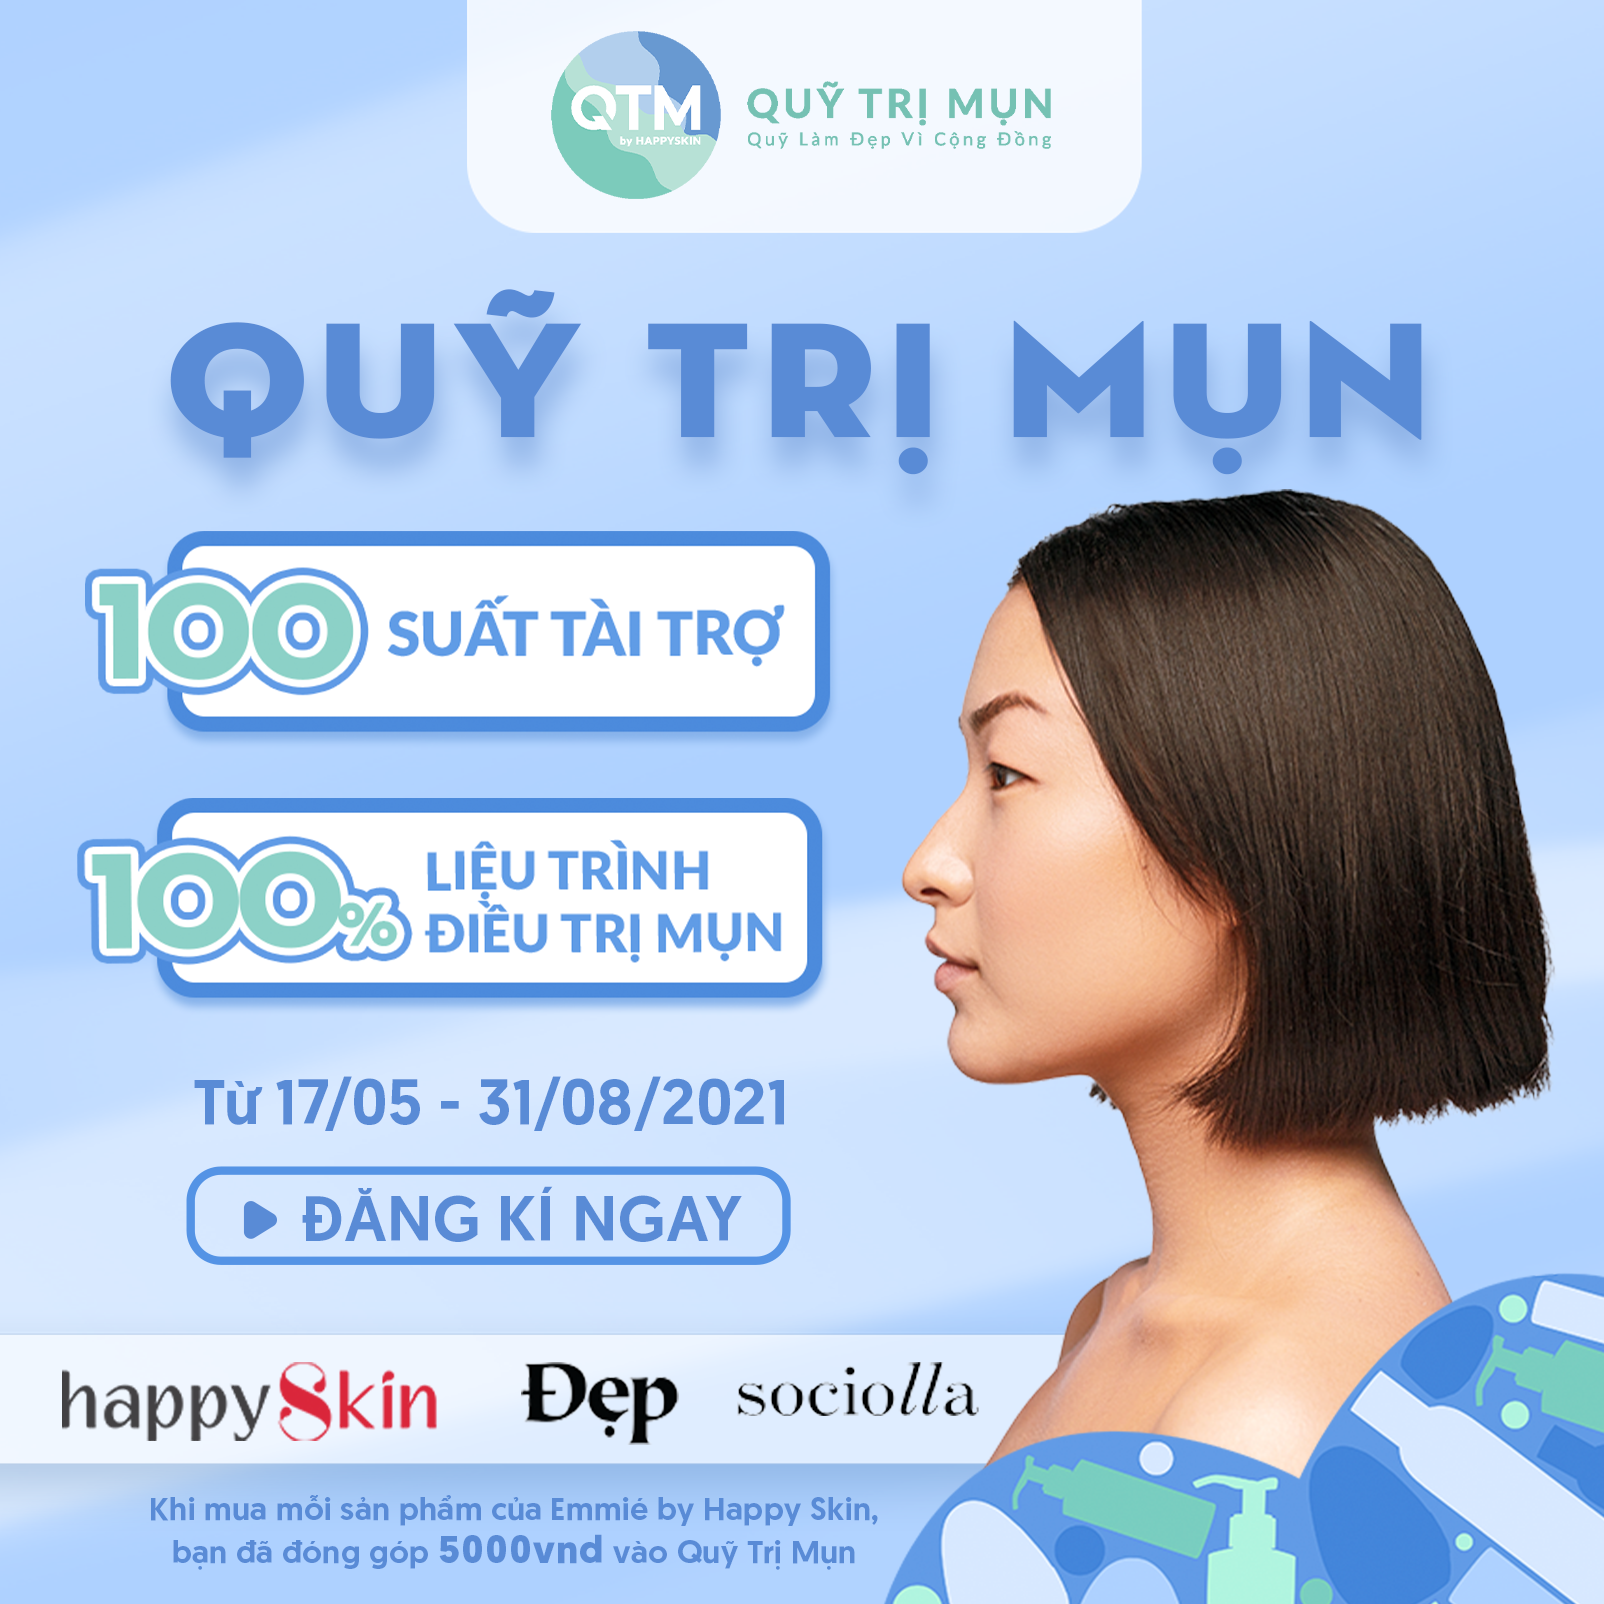 Ra mắt “Quỹ trị mụn” đầu tiên tại Việt Nam, tài trợ 100 suất trị mụn miễn phí